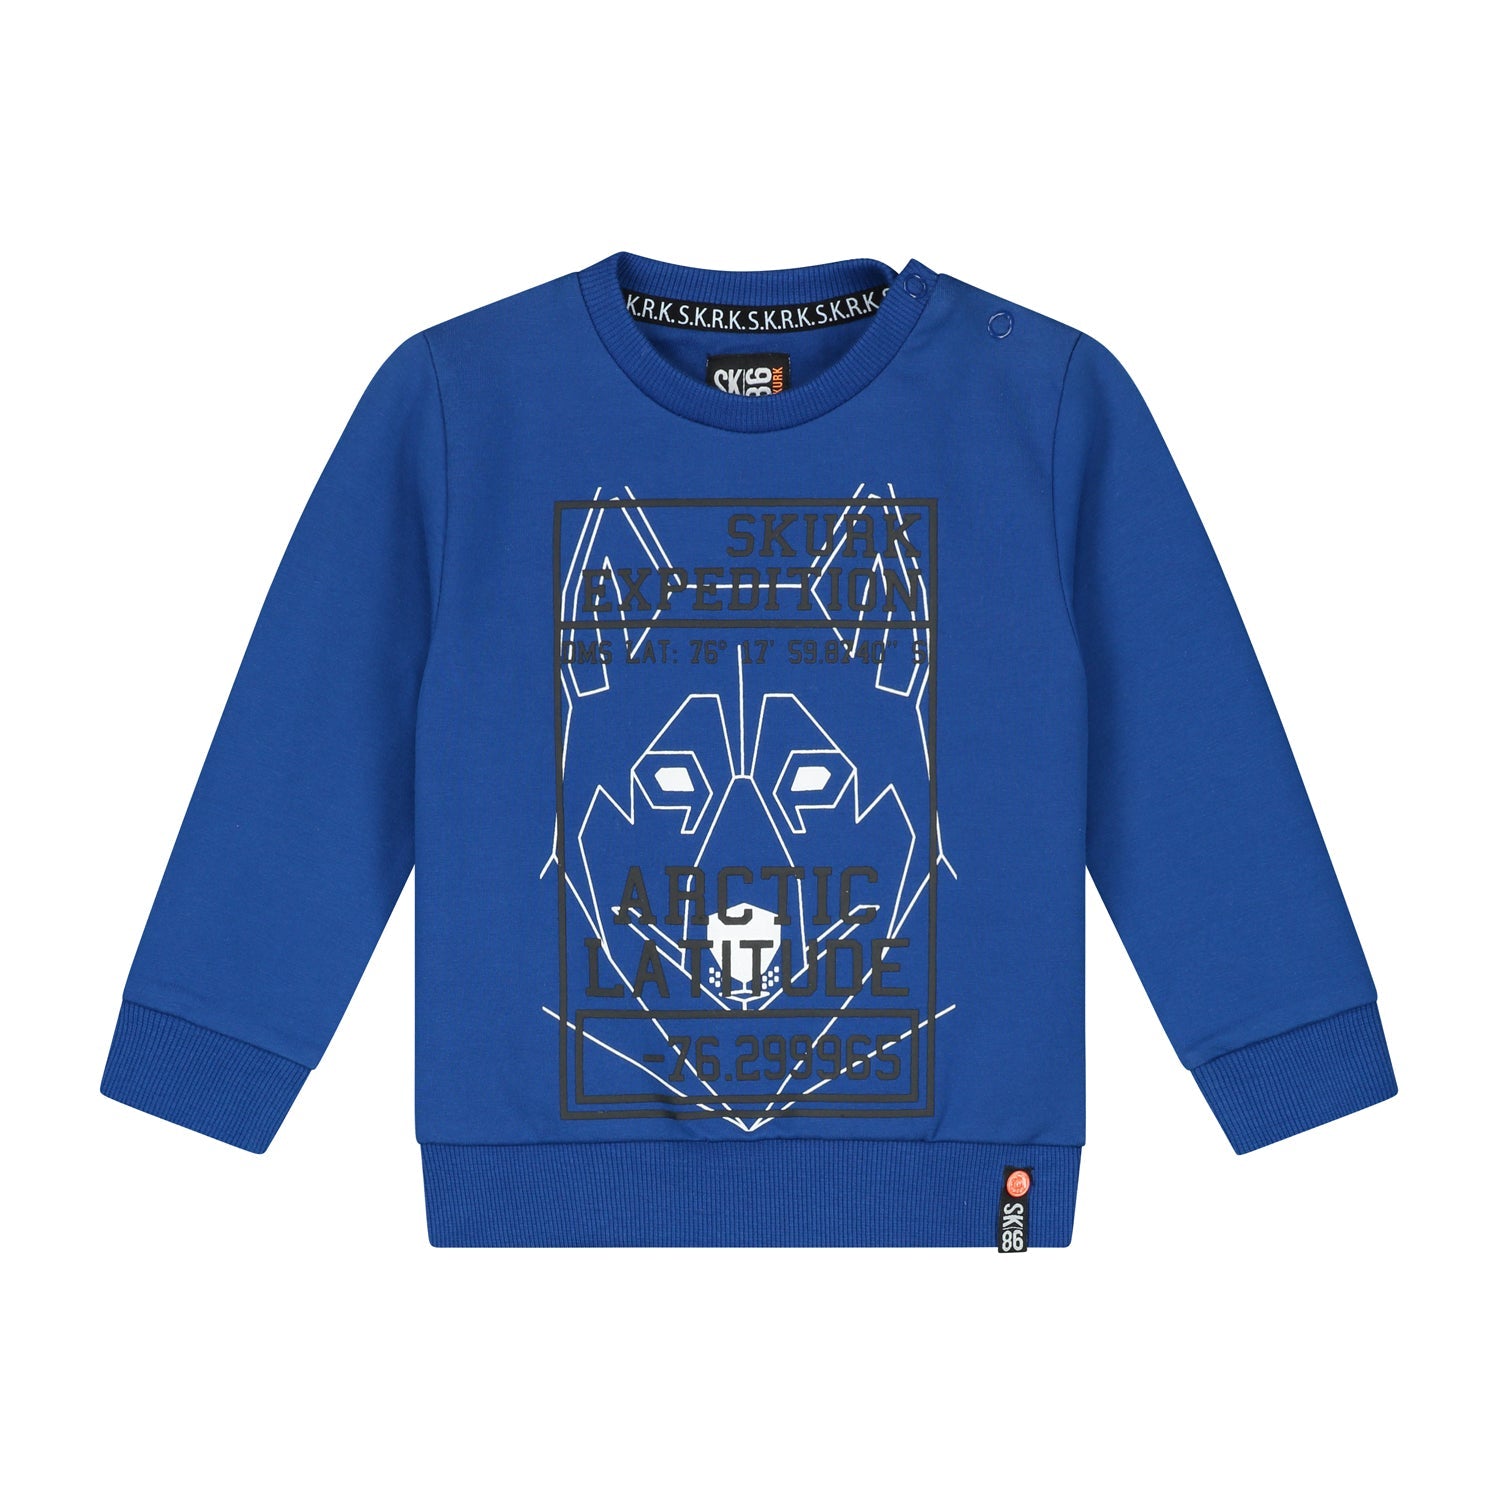 Jongens Sweater Sander Blue van Skurk Little Rebel in de kleur Blue in maat 86.